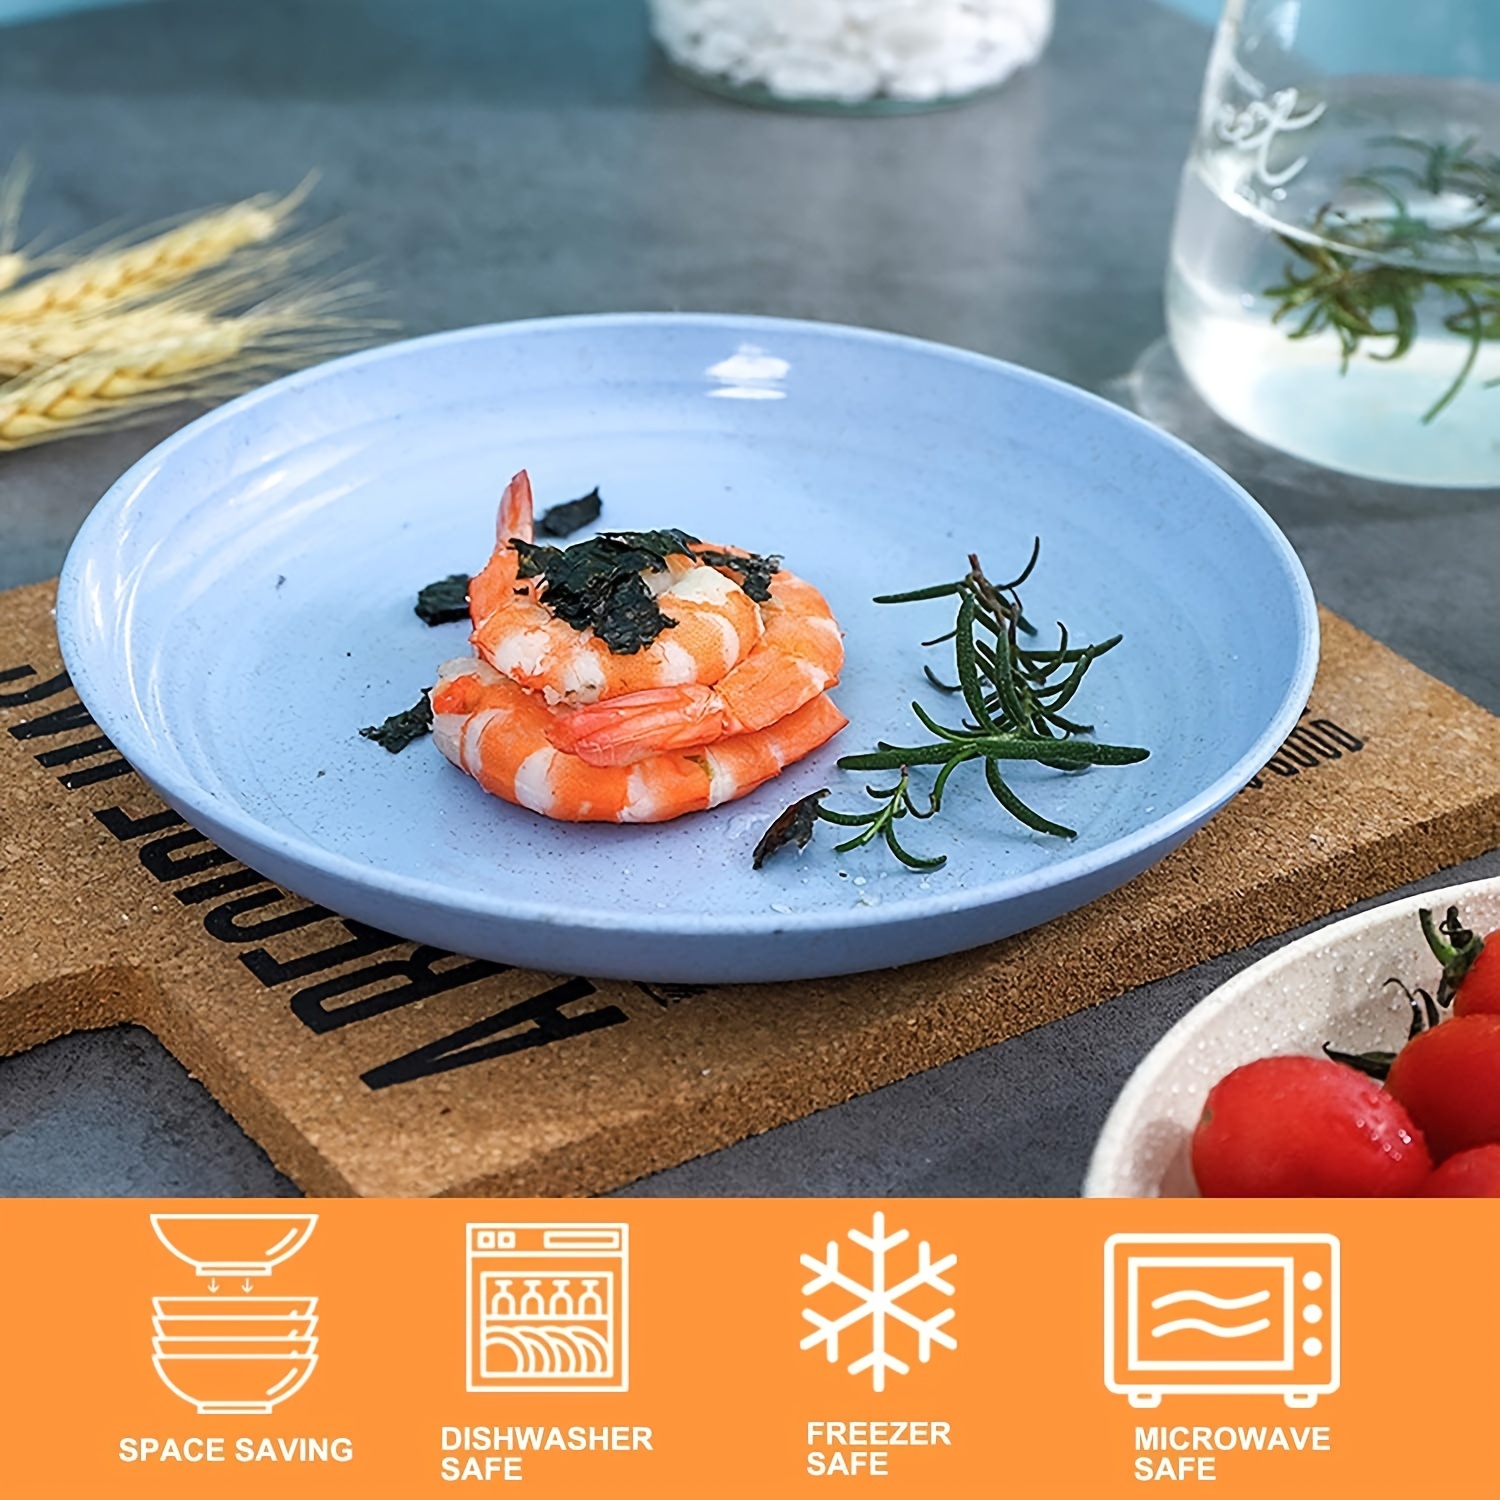 Food Plate Dishwasher Safe, Microwave Safe Plates